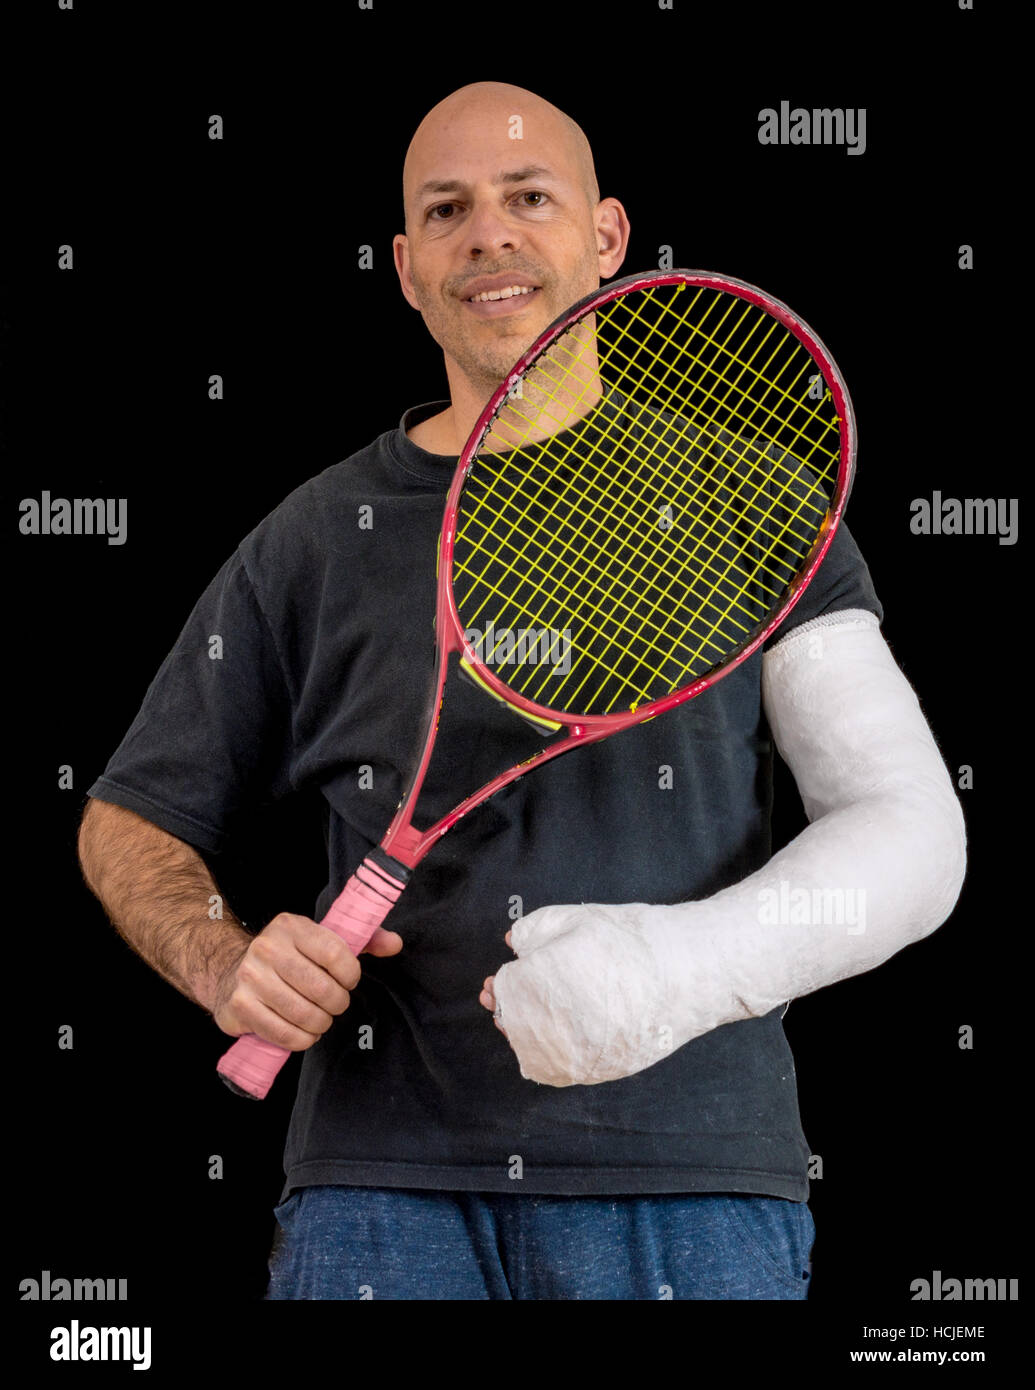 Junger Mann hält einen Tennisschläger nach seinem Handgelenk zu brechen, in einem Tennis-Spiel, eine helle weiße sportliche arm Cast, isoliert auf schwarz Stockfoto